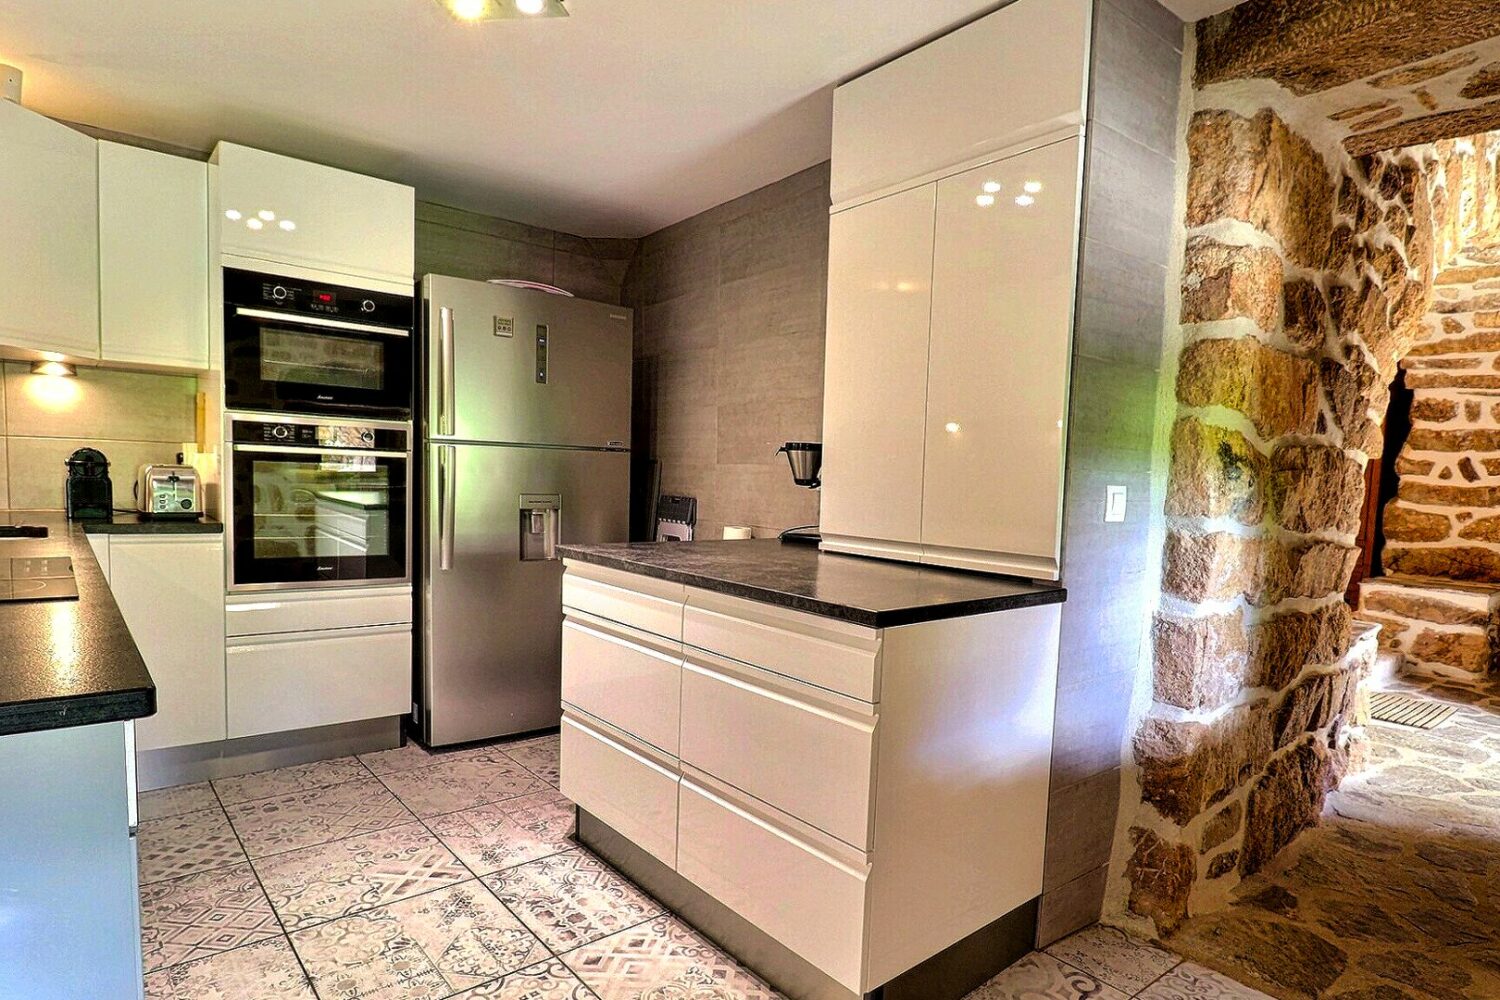 Kitchen - Granite worktop